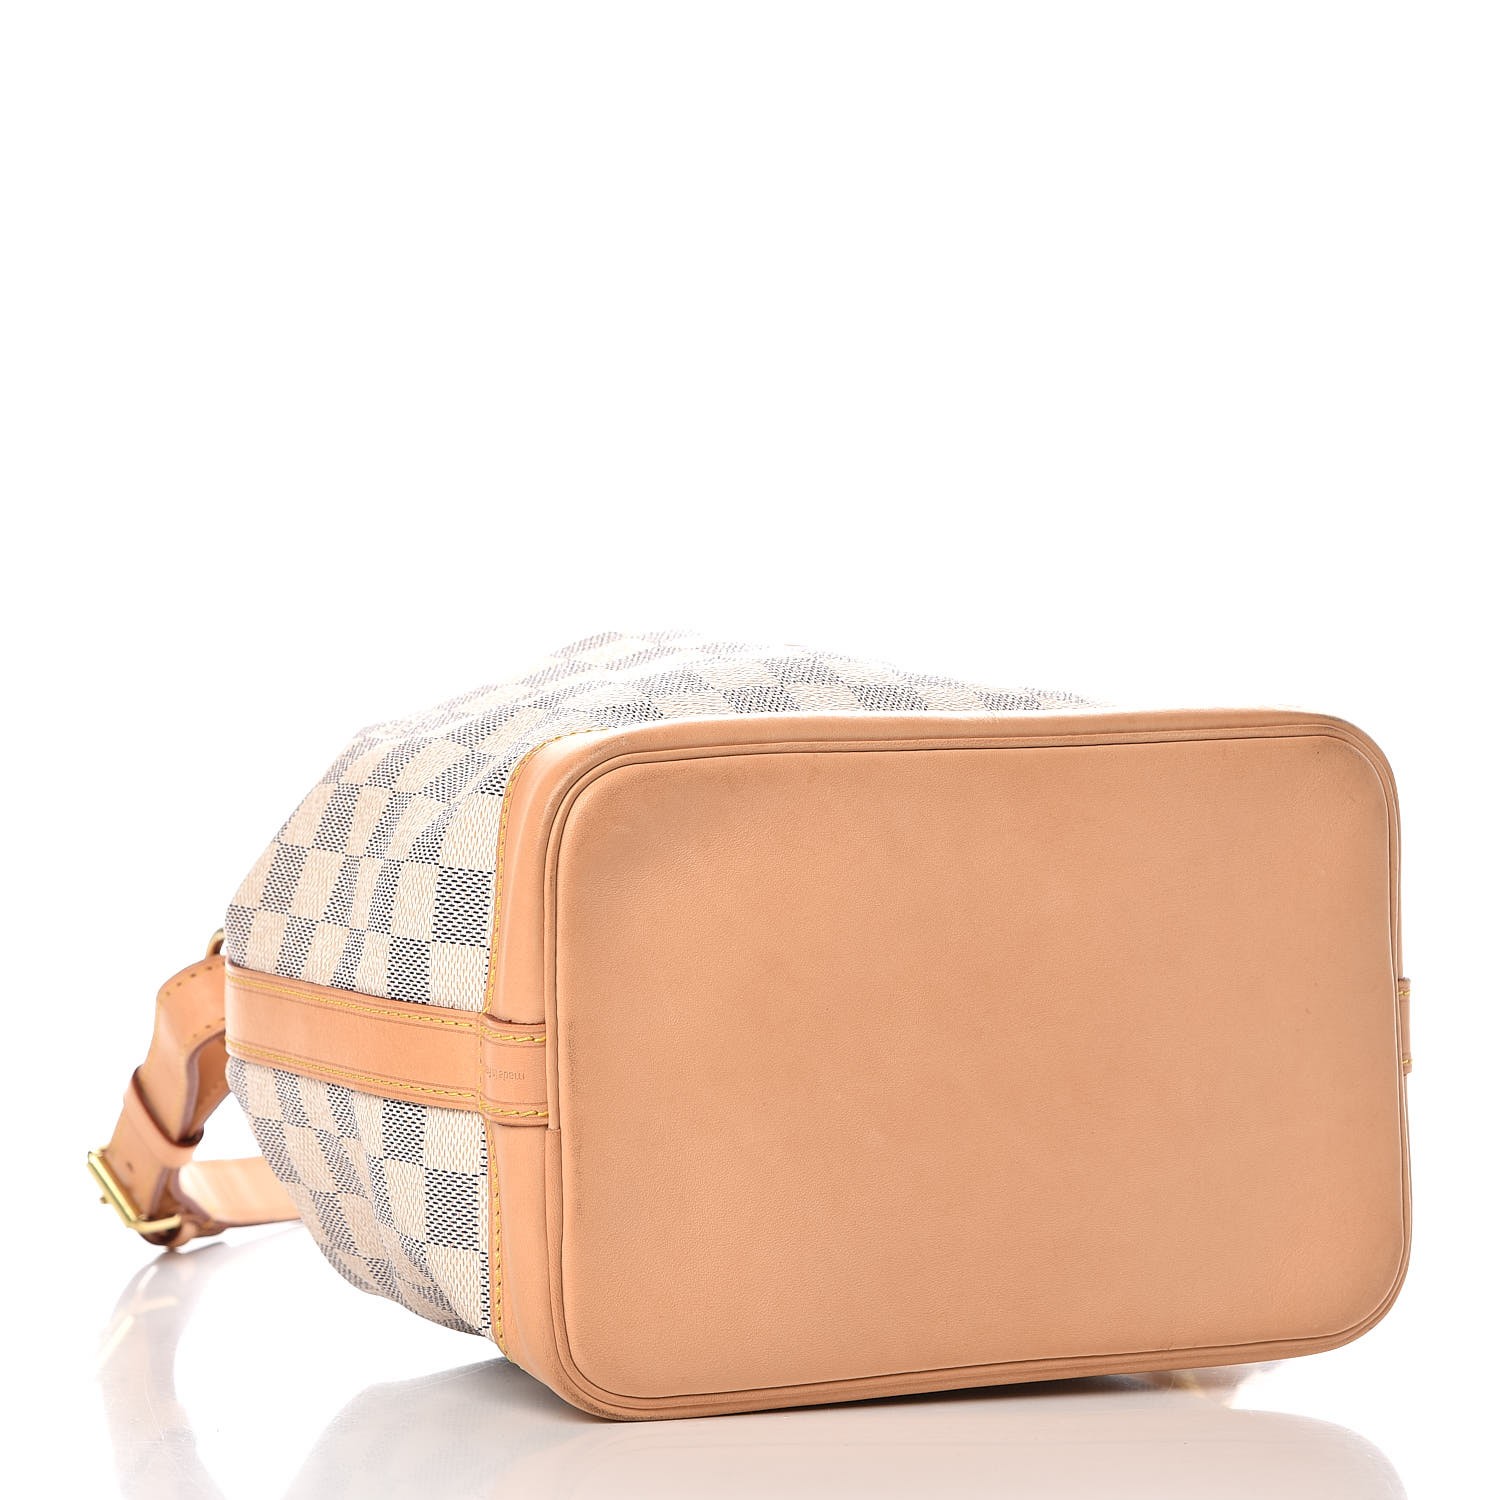 Replica Louis Vuitton Noe BB Bag In Damier Azur Canvas N41220